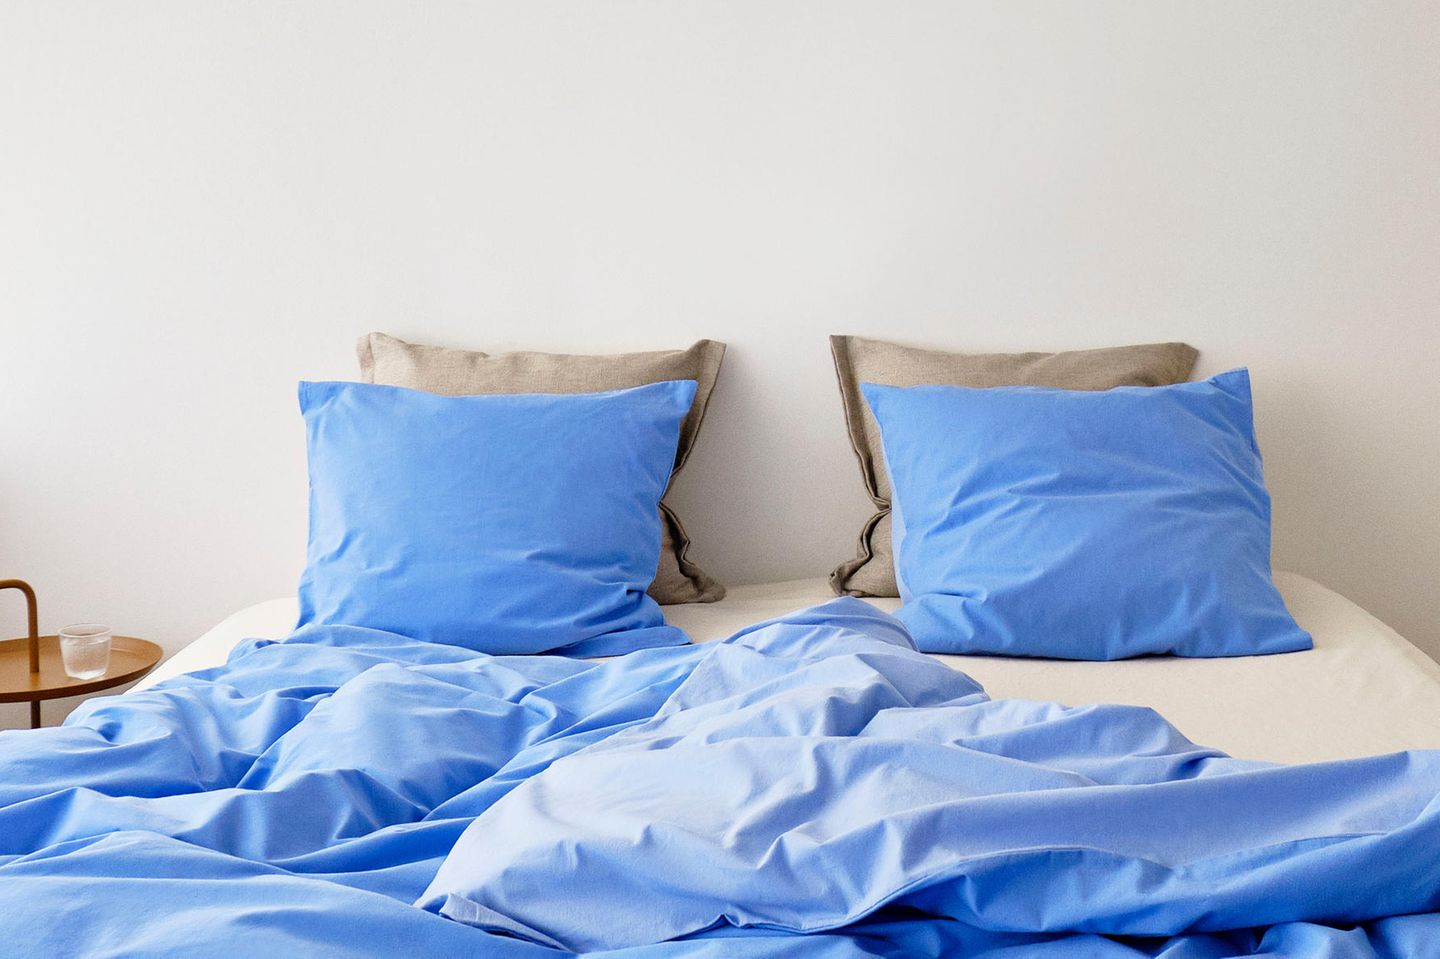 Bettwäsche in Blau in einem ungemachten Bett vor einem weißen Hintergrund